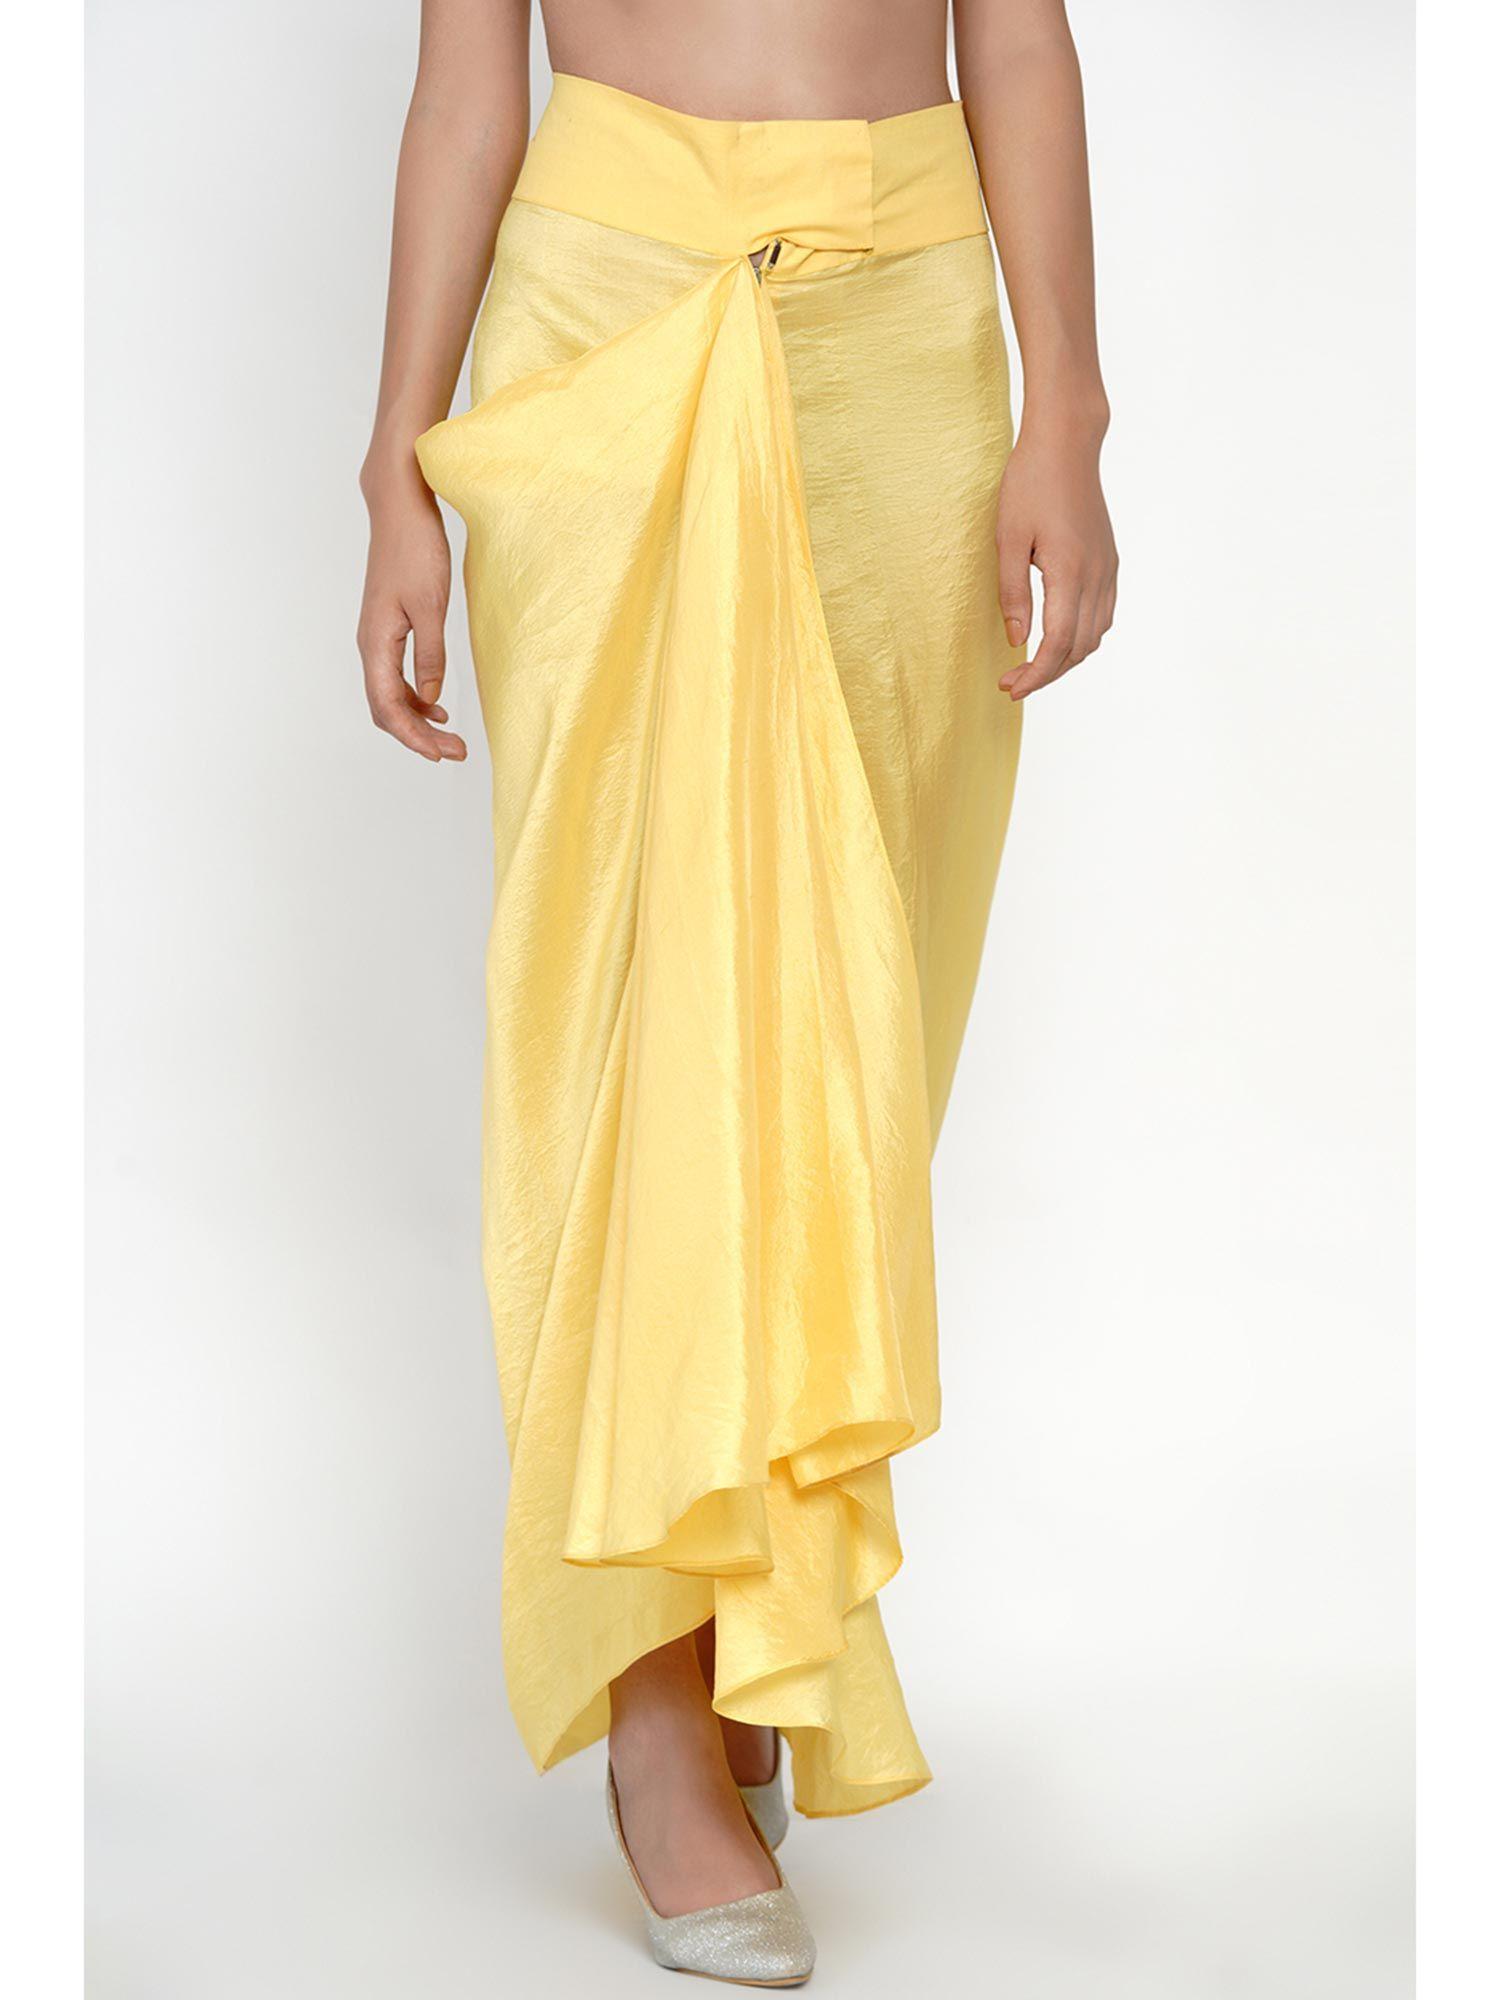 yellow dhoti skirt